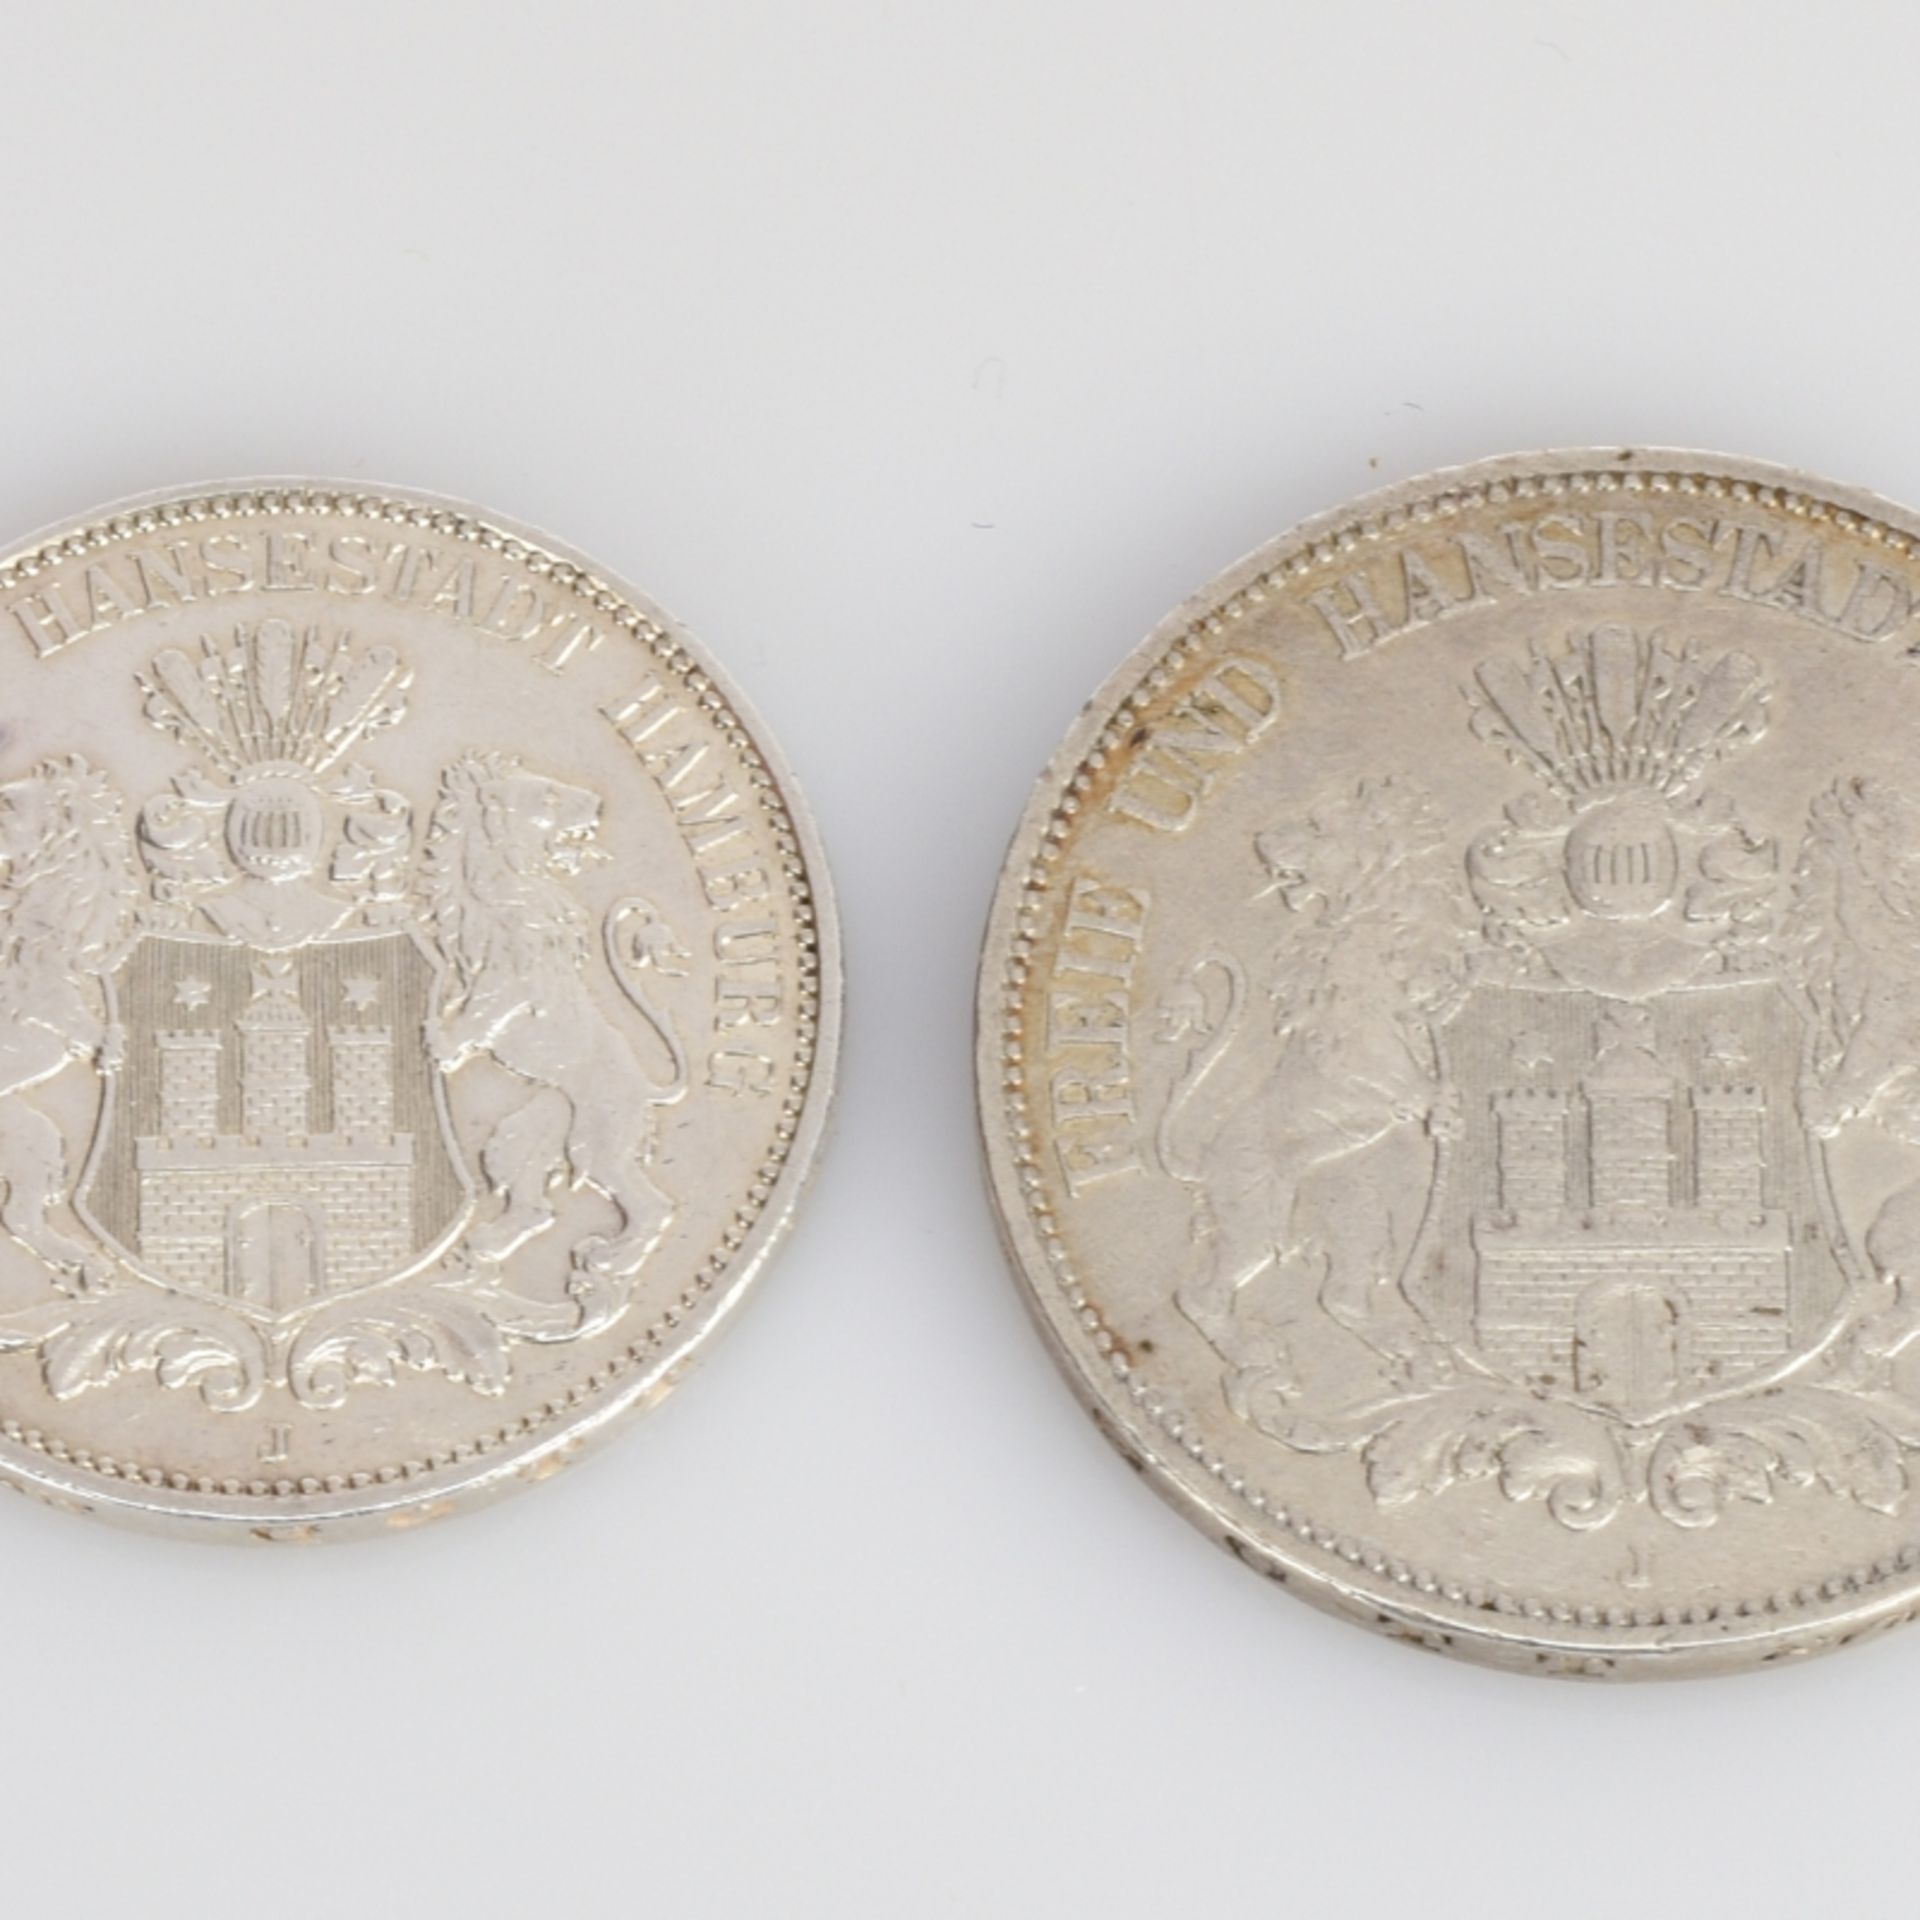 Paar Münzen Deutsches Kaiserreich